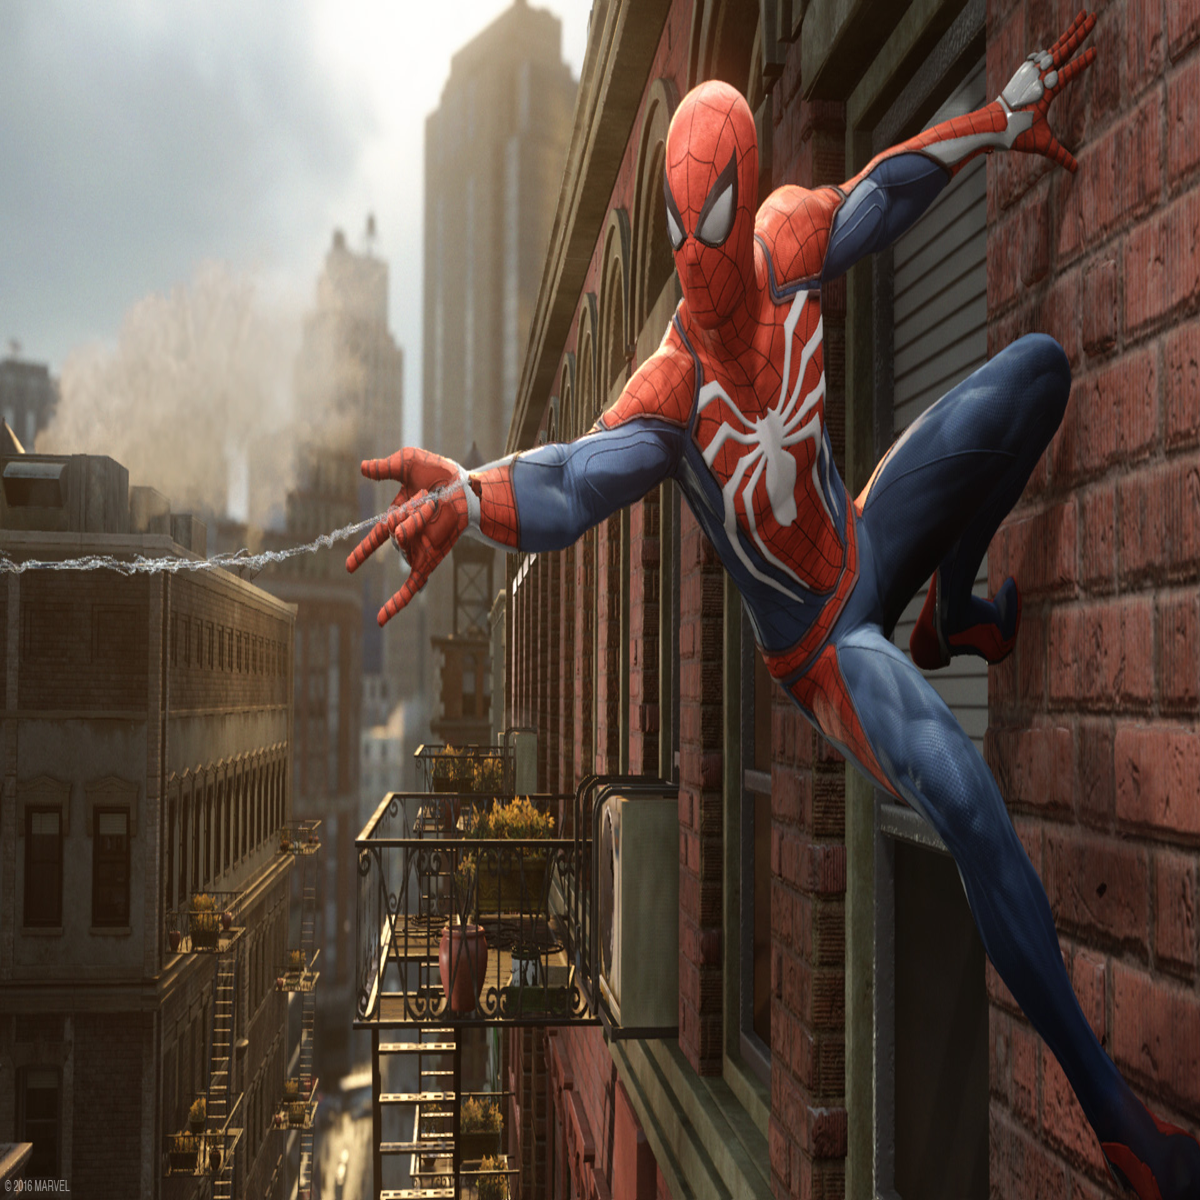 Marvel's Spider-Man Continua Fantástico, Mas Agora No PC